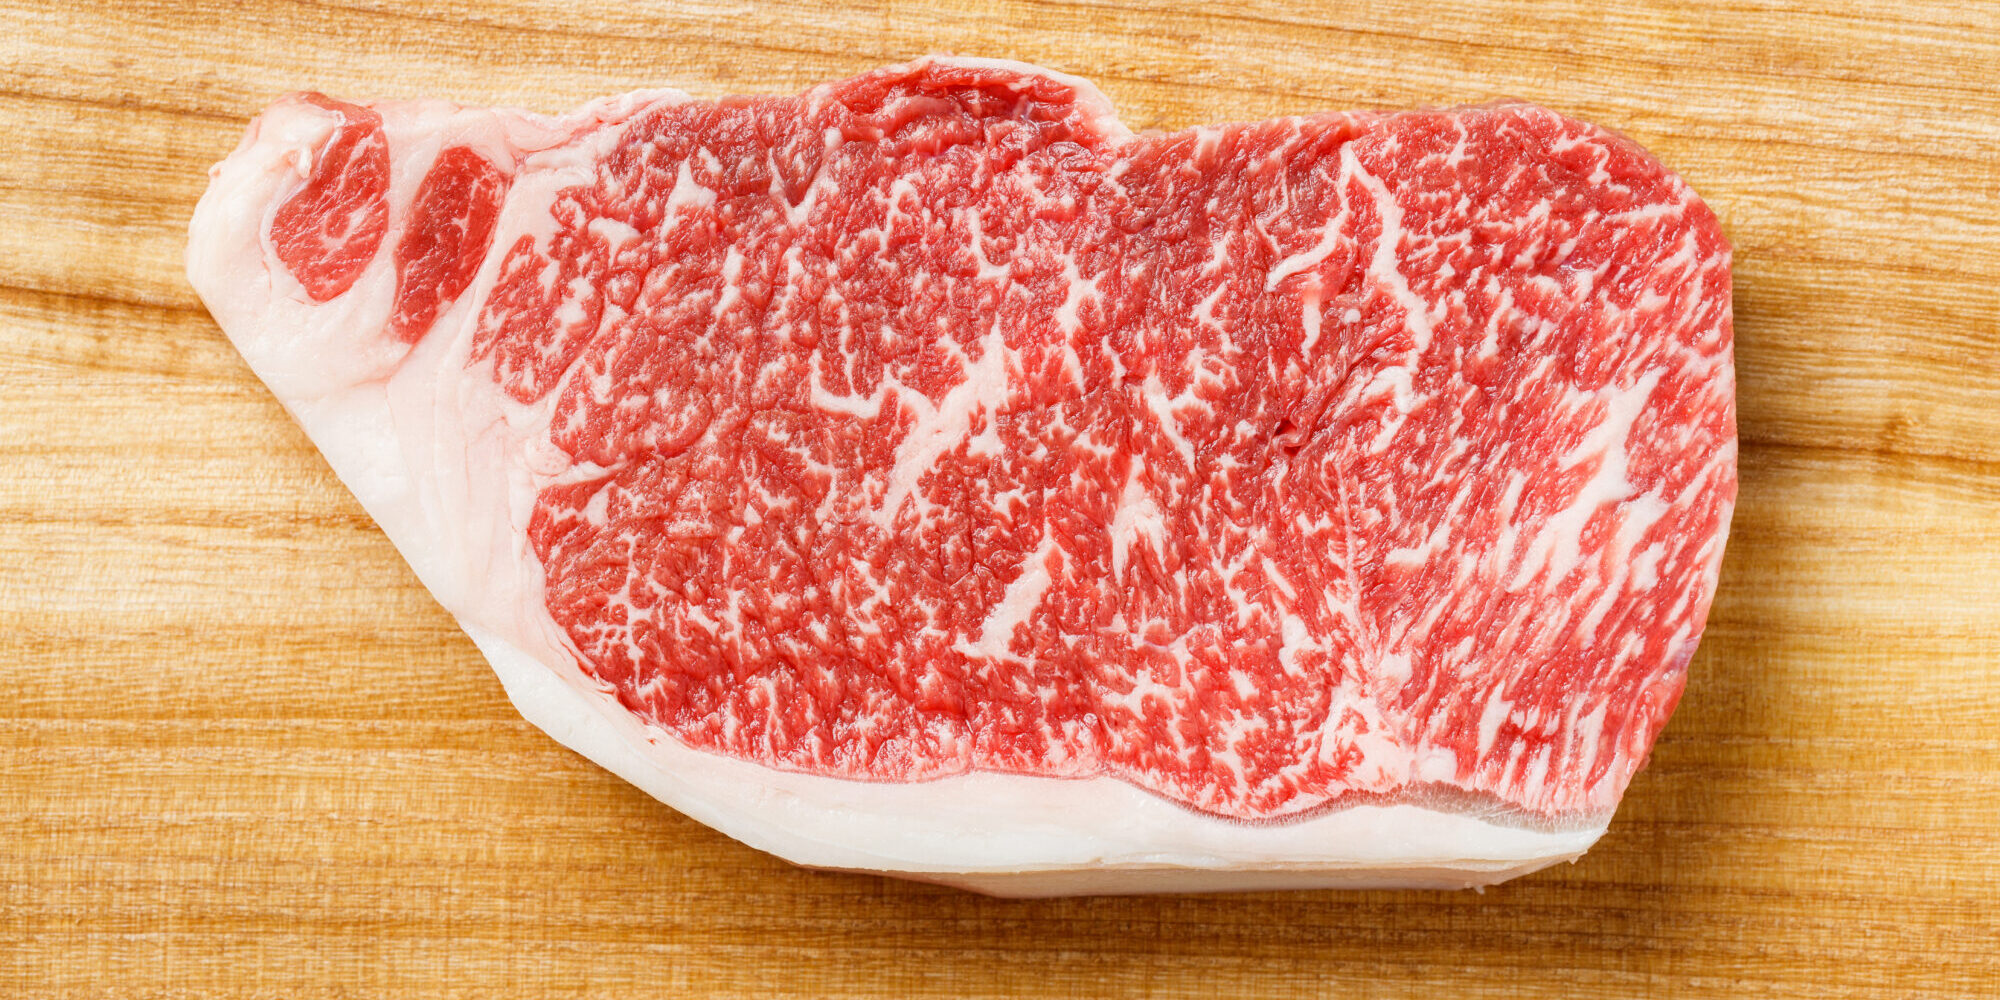 Wagyu striploin steak